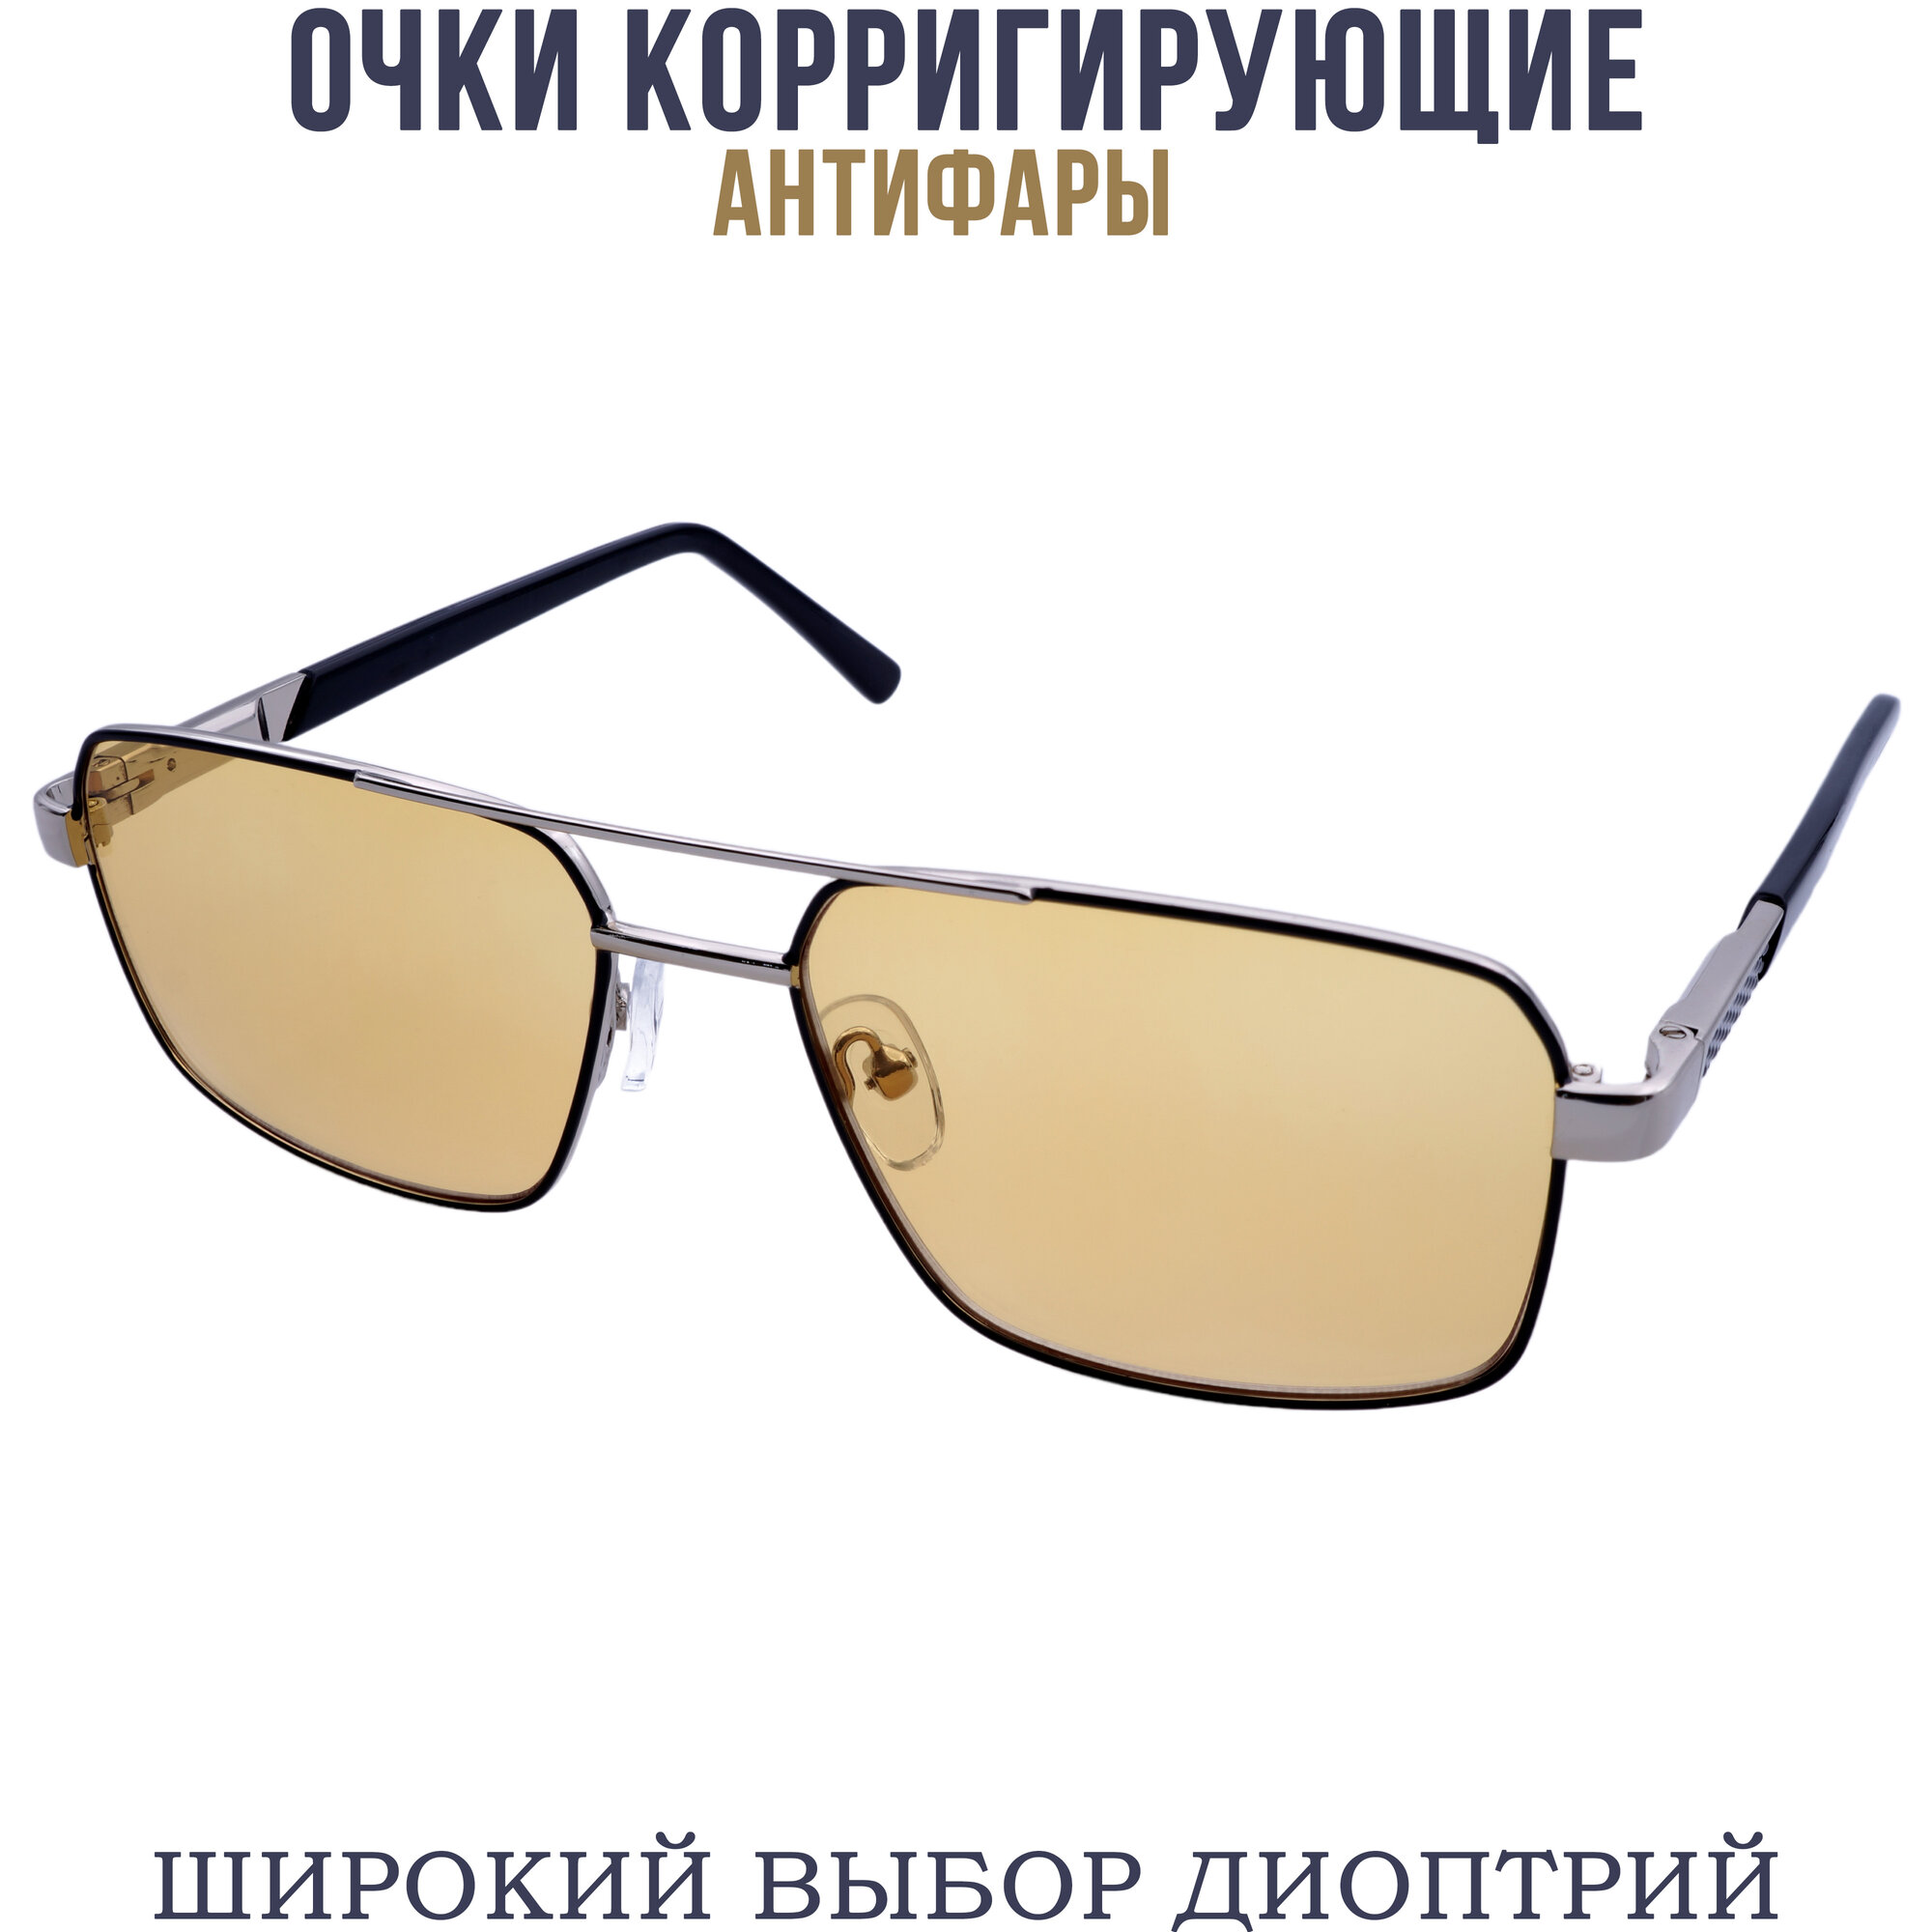 Готовые очки для зрения антифара с диоптриями pd62-64 бронзово-черный +2.50